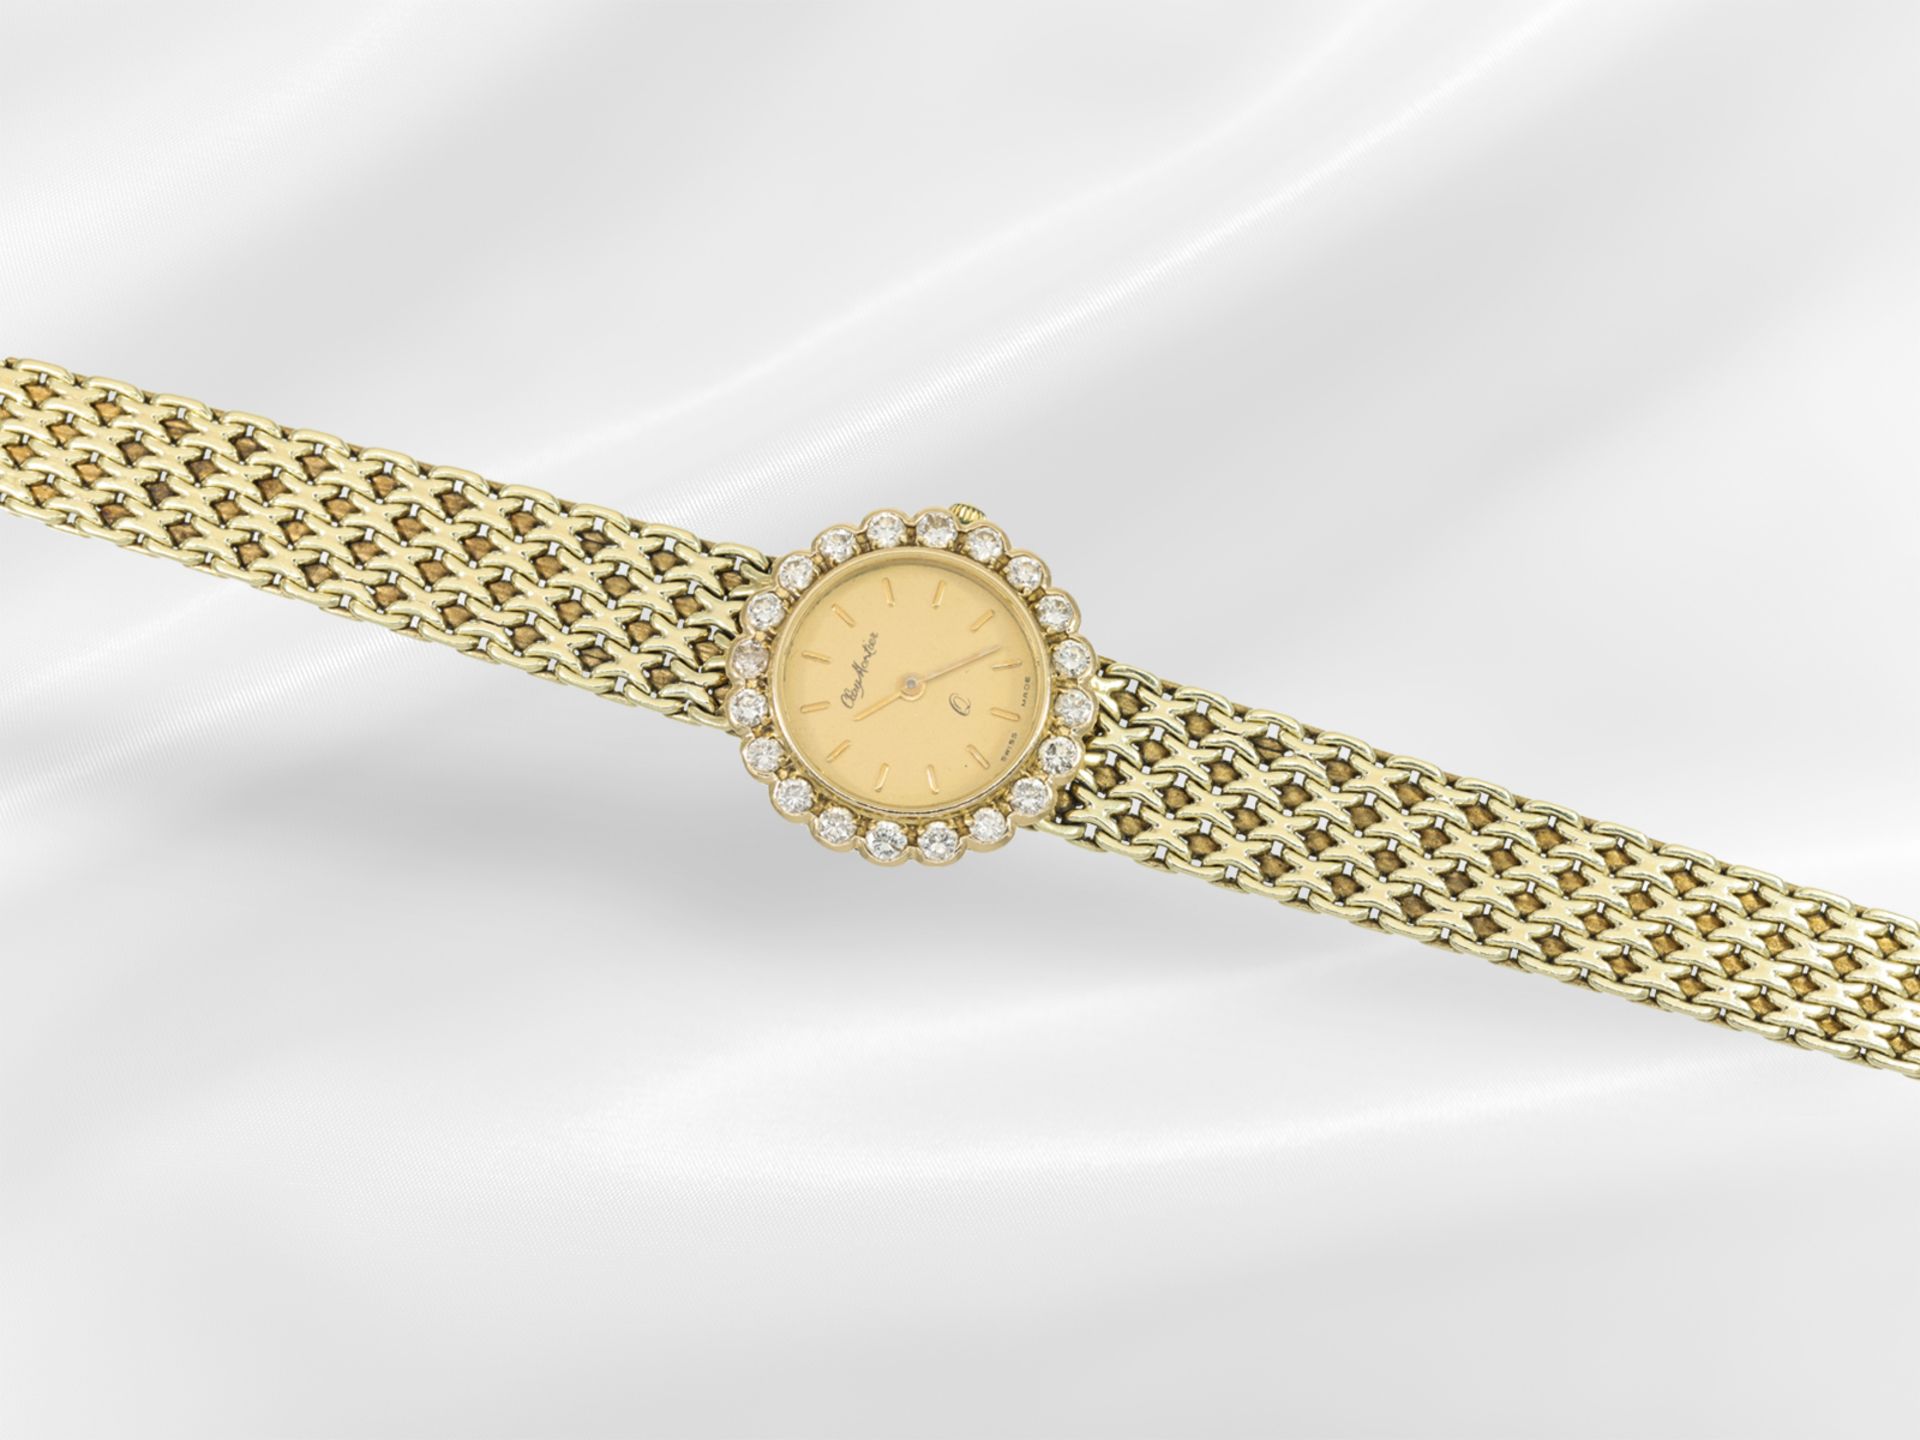 Armbanduhr: goldene vintage Damenuhr der Marke "Clay Montier" mit Brillantbesatz - Bild 2 aus 4